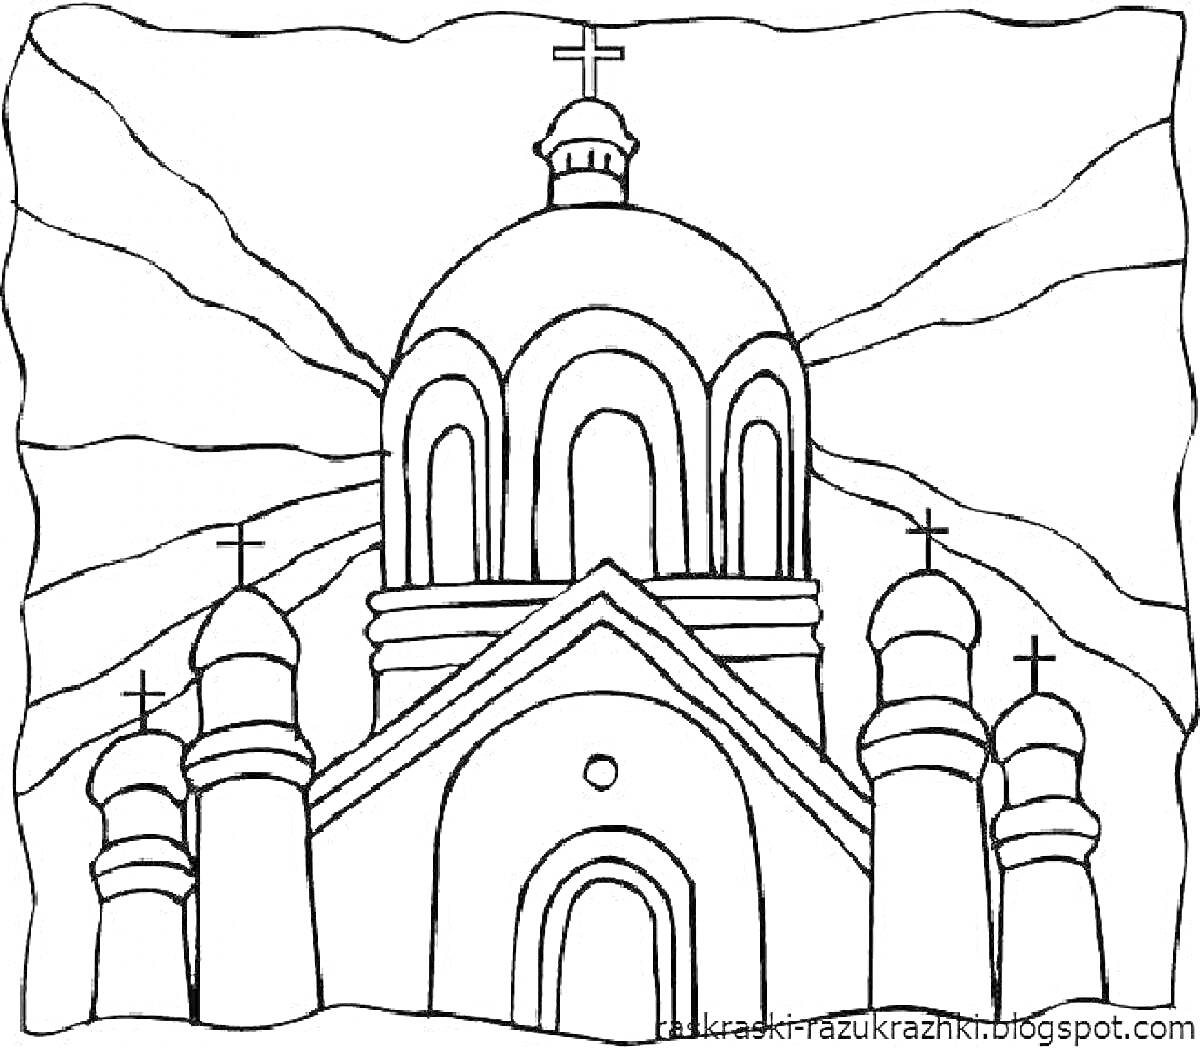 Раскраска Храм с куполами и крестами